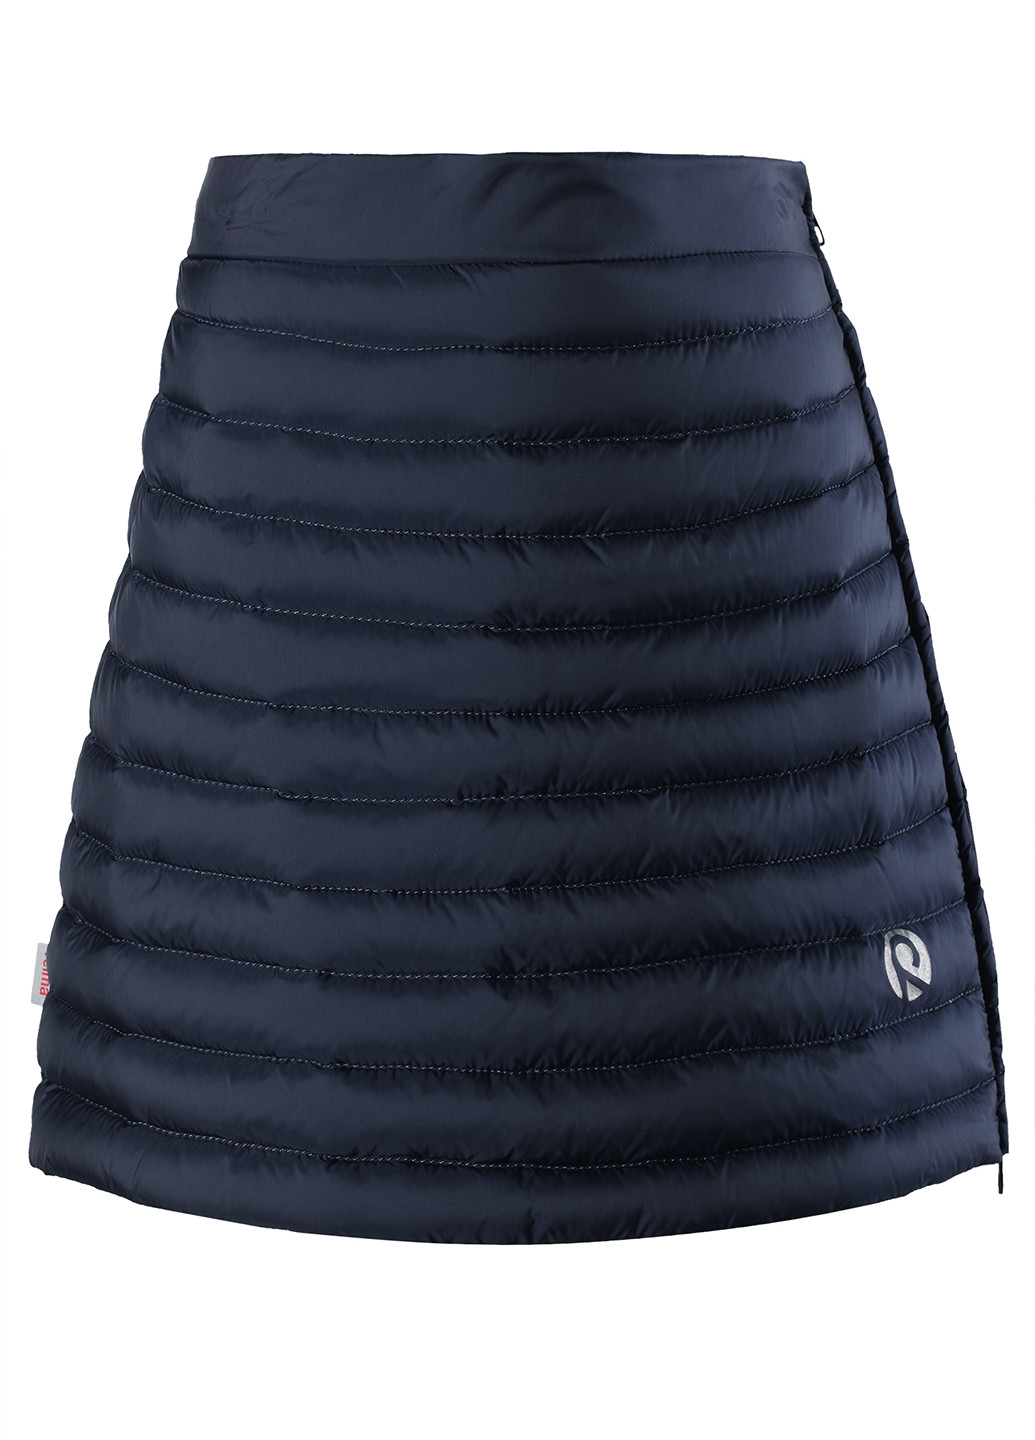 Темно-синяя кэжуал однотонная юбка Reima мини